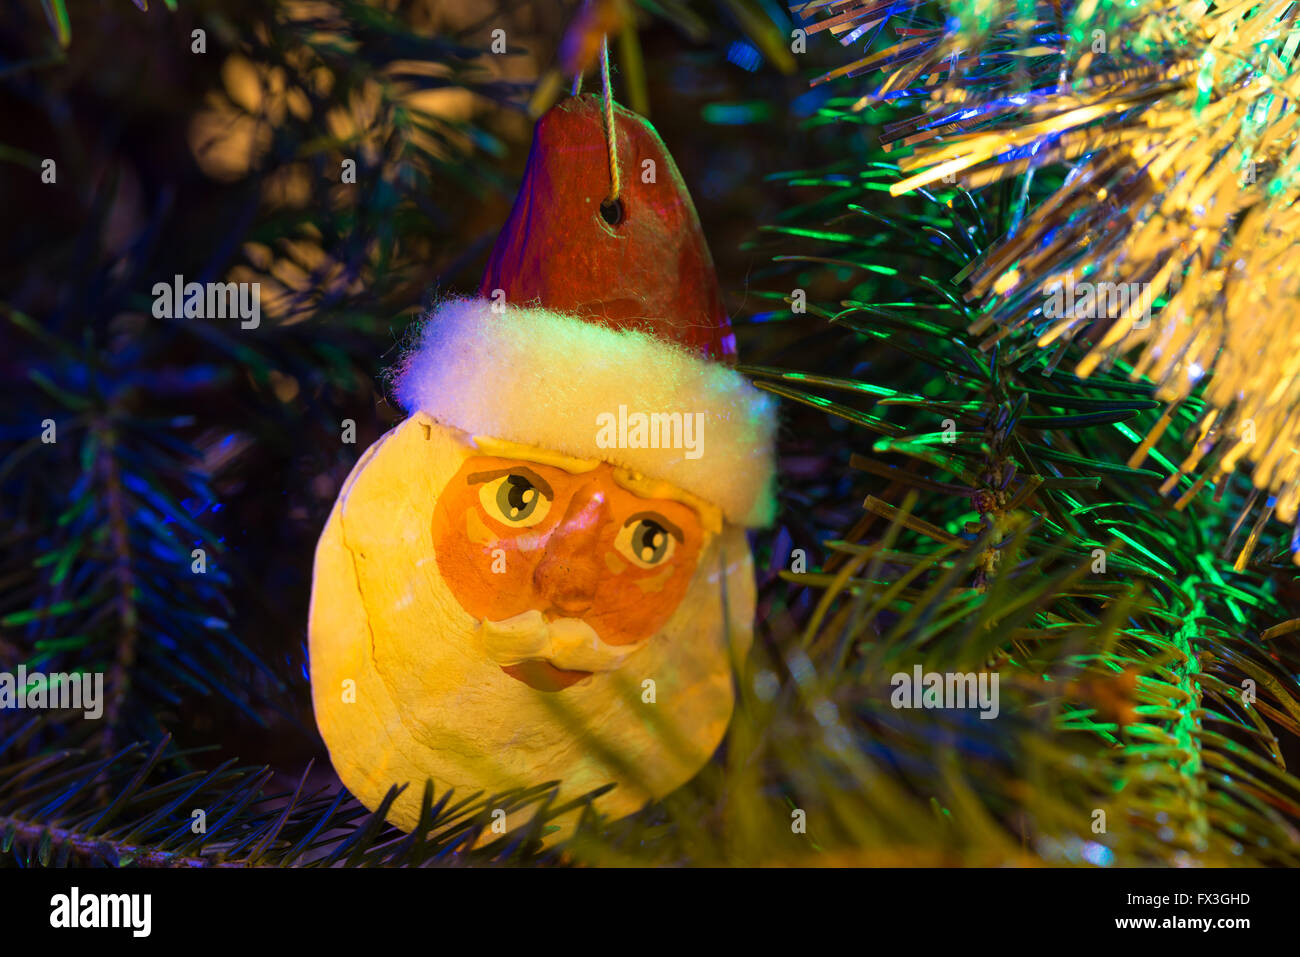 Ornamento del árbol de navidad de Santa Claus rostro iluminado por las luces del árbol de Navidad. Foto de stock